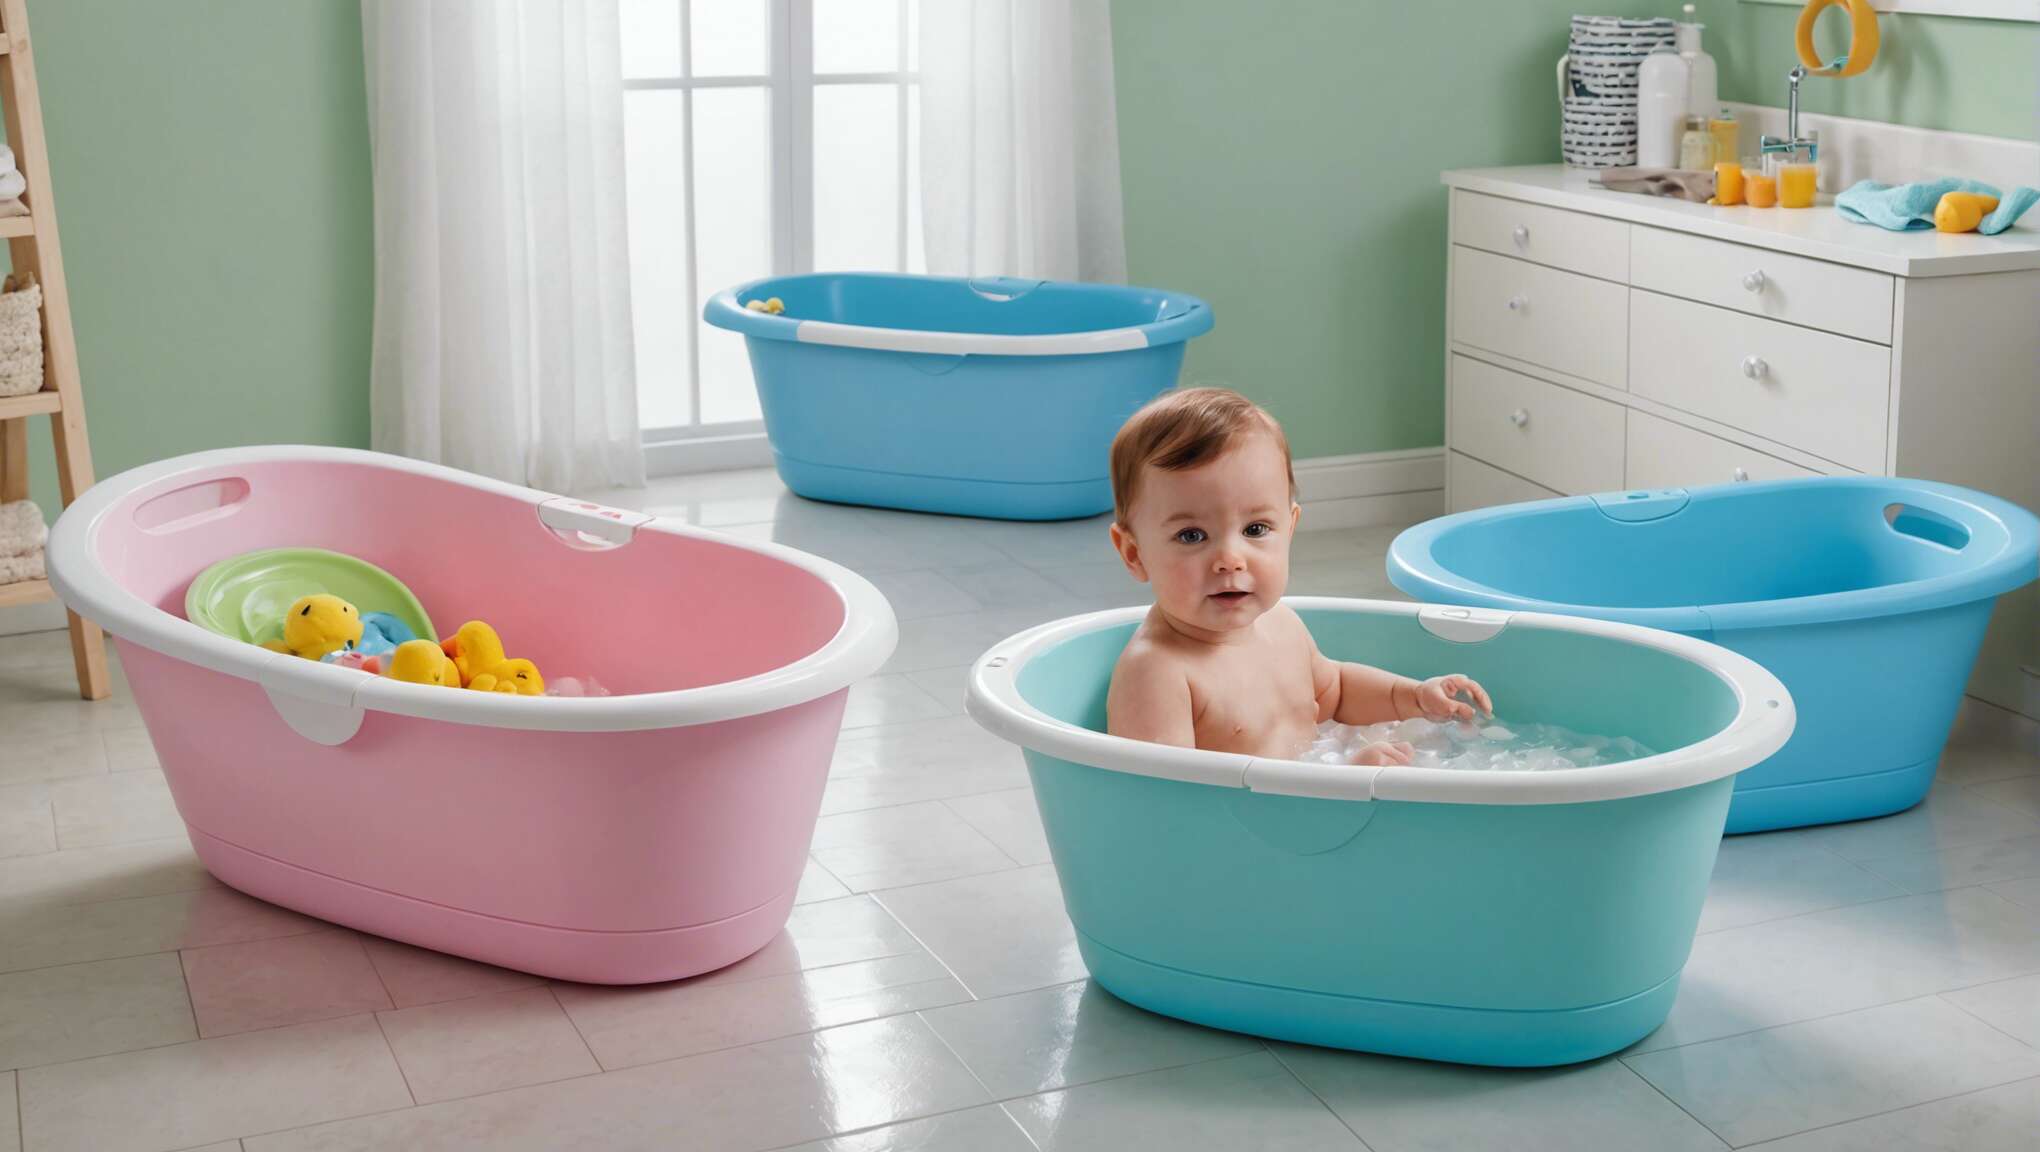 Le coût d'une baignoire bébé : évaluer le rapport qualité-prix